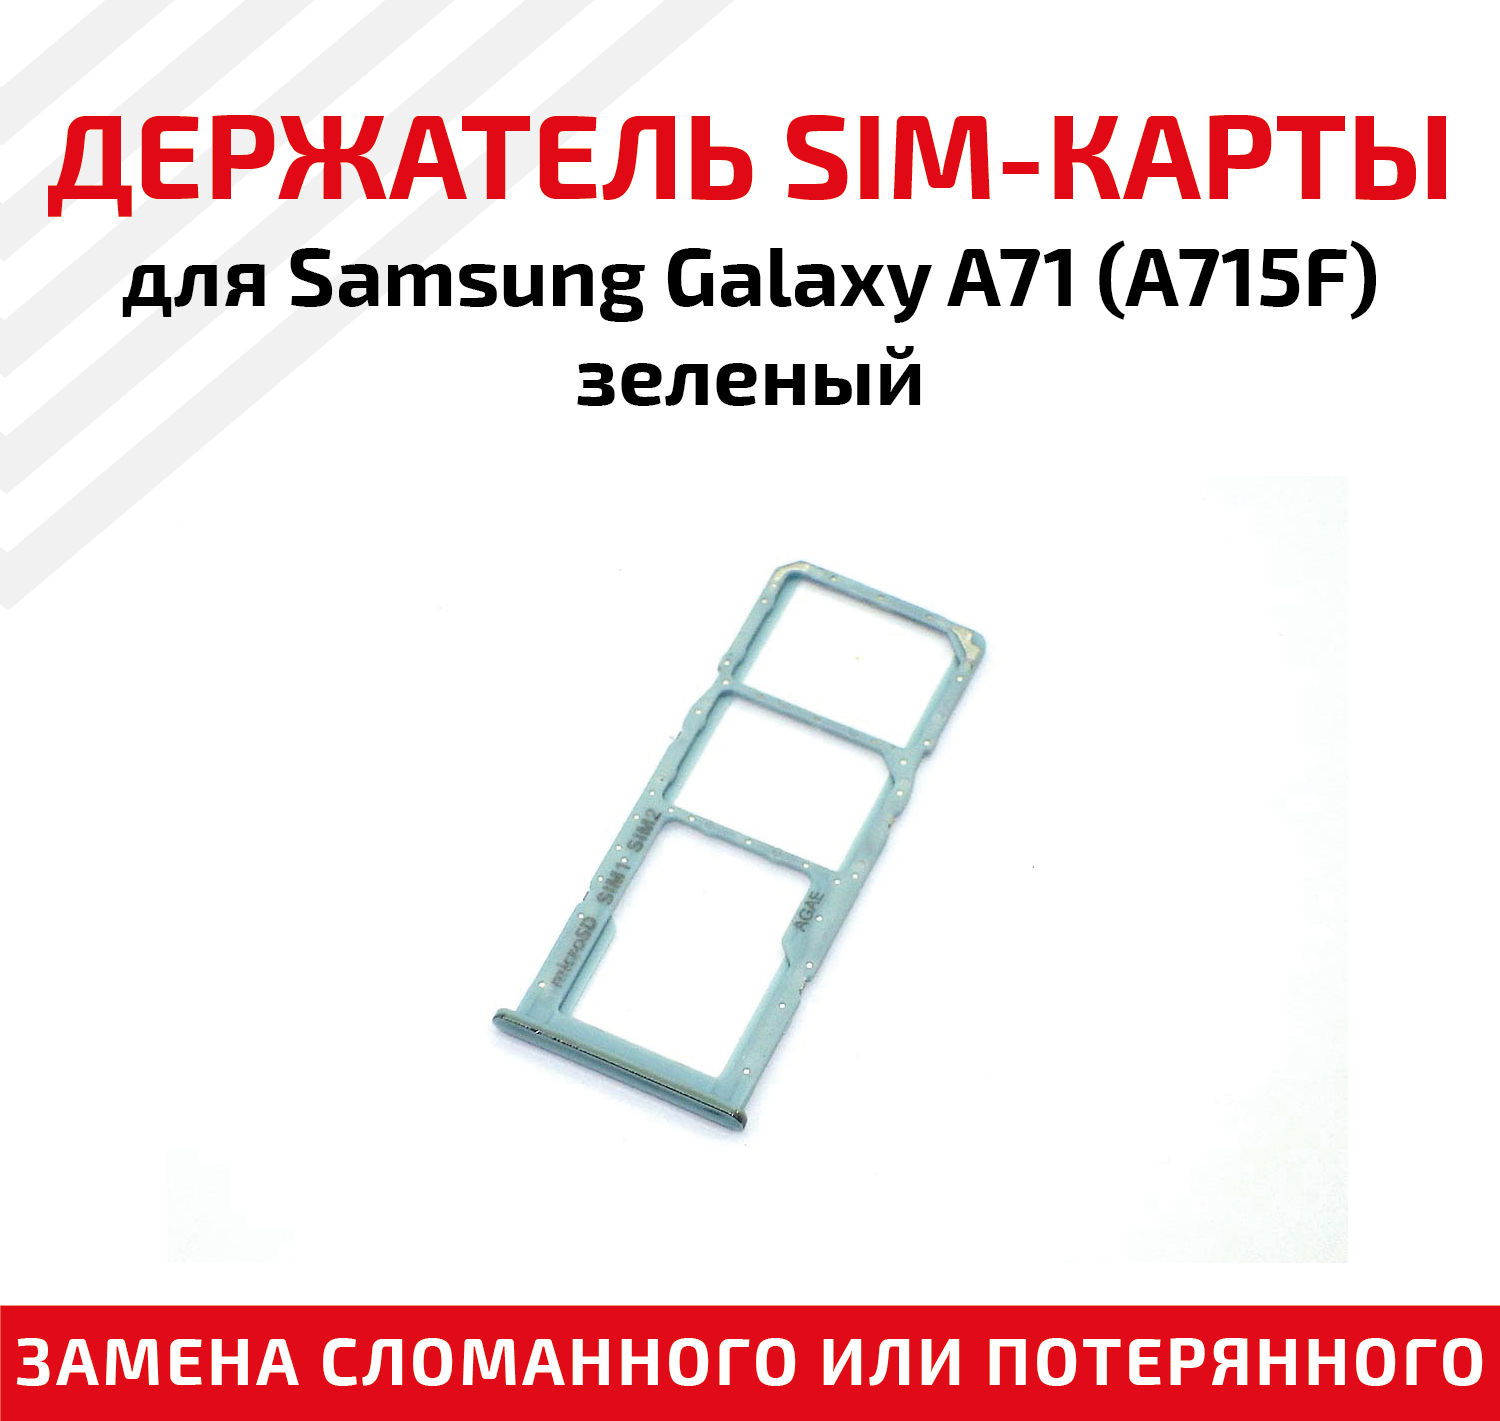 Лоток (держатель, контейнер, слот) SIM-карты для мобильного телефона (смартфона) Samsung Galaxy A71 (A715F), зеленый